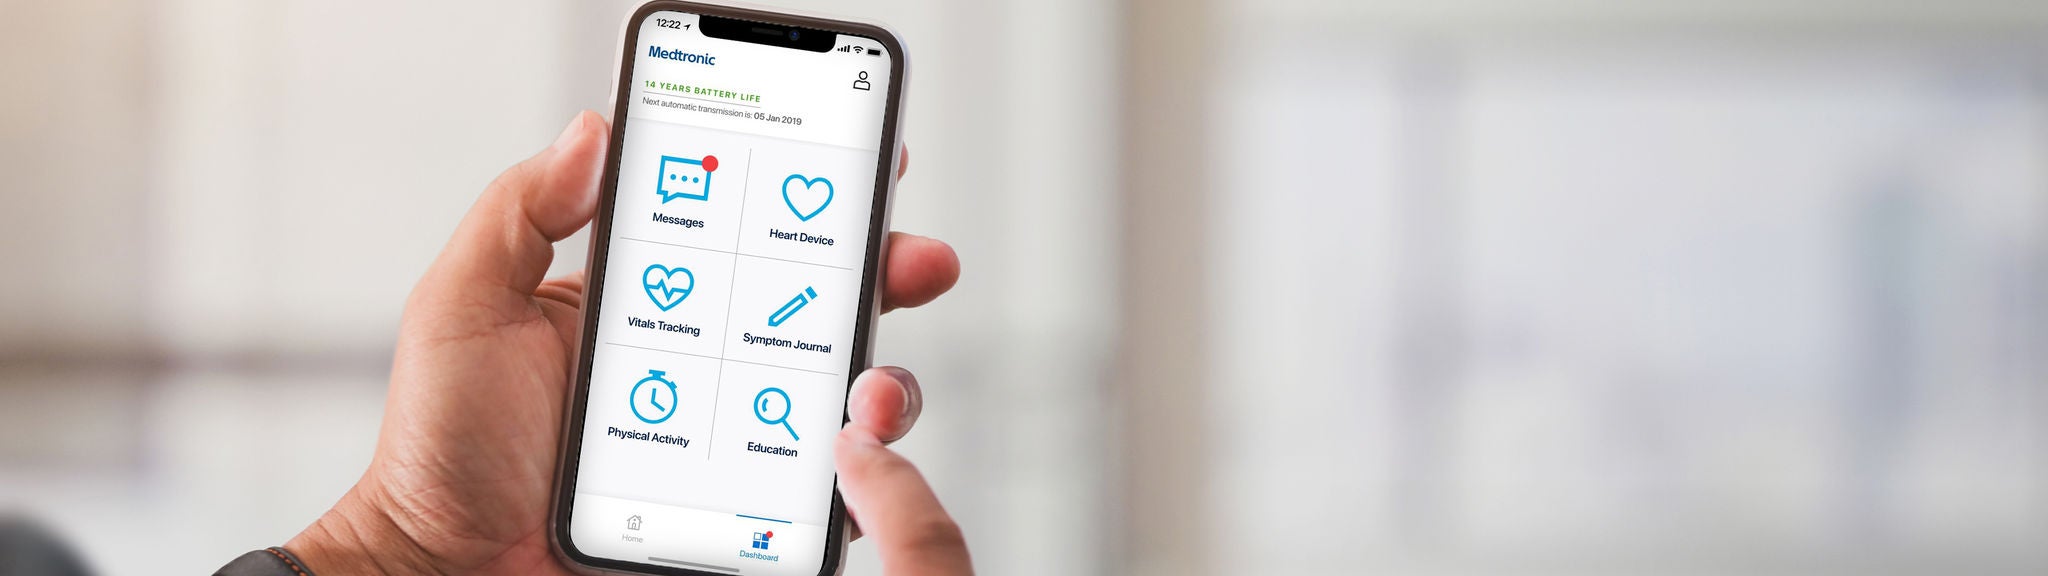 Eine App des Herstellers Medtronic zeigt auf einem Smartphone Informationen zu einem implantierten Defibrillator.